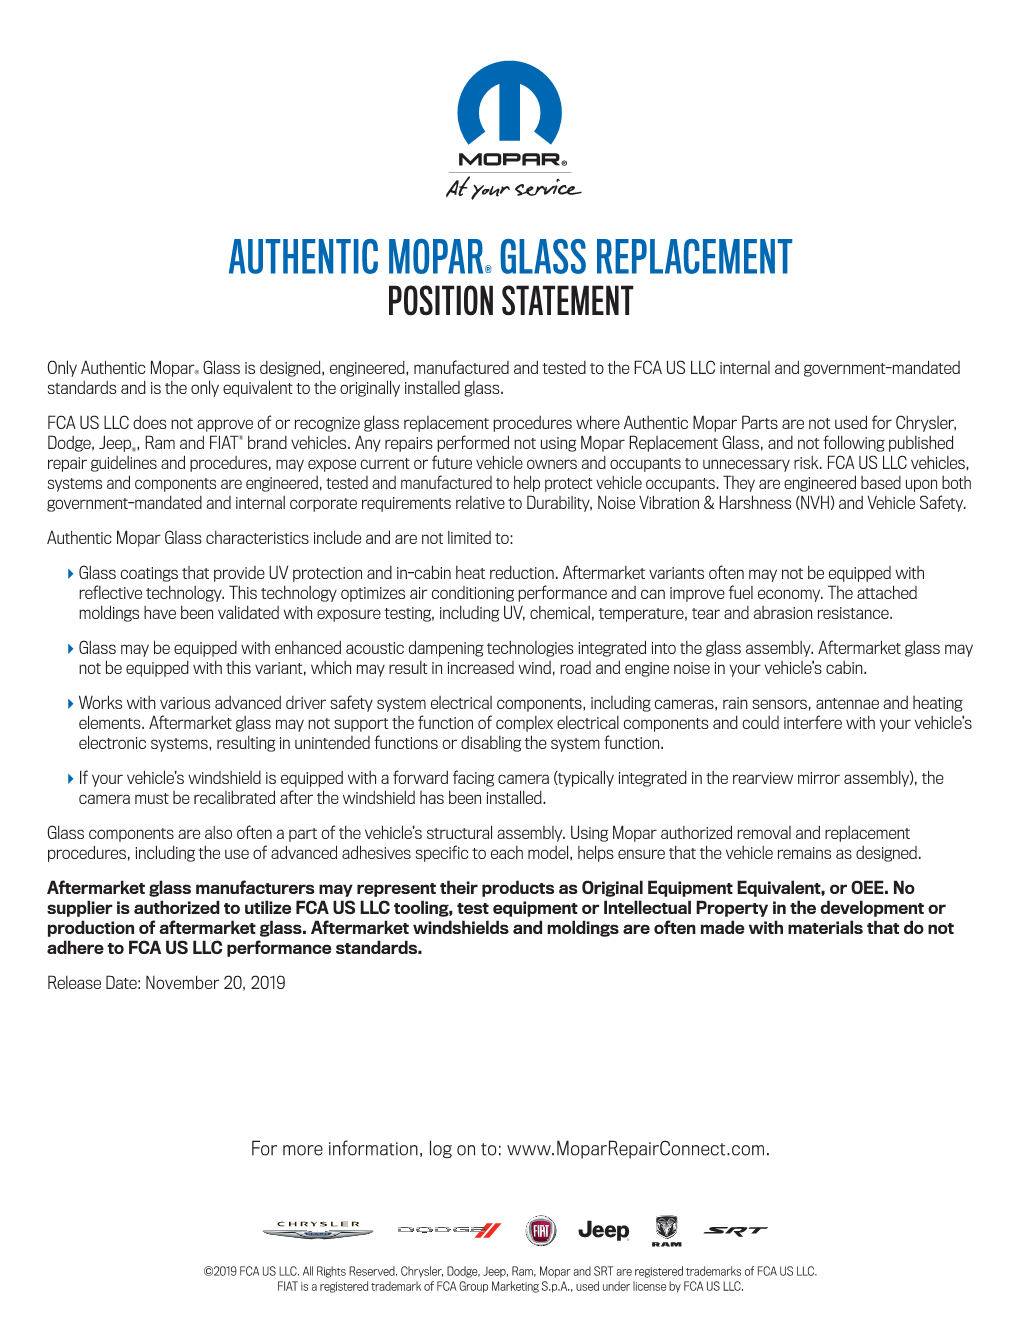 Authentic Mopar® Glass Replacement Position Statement